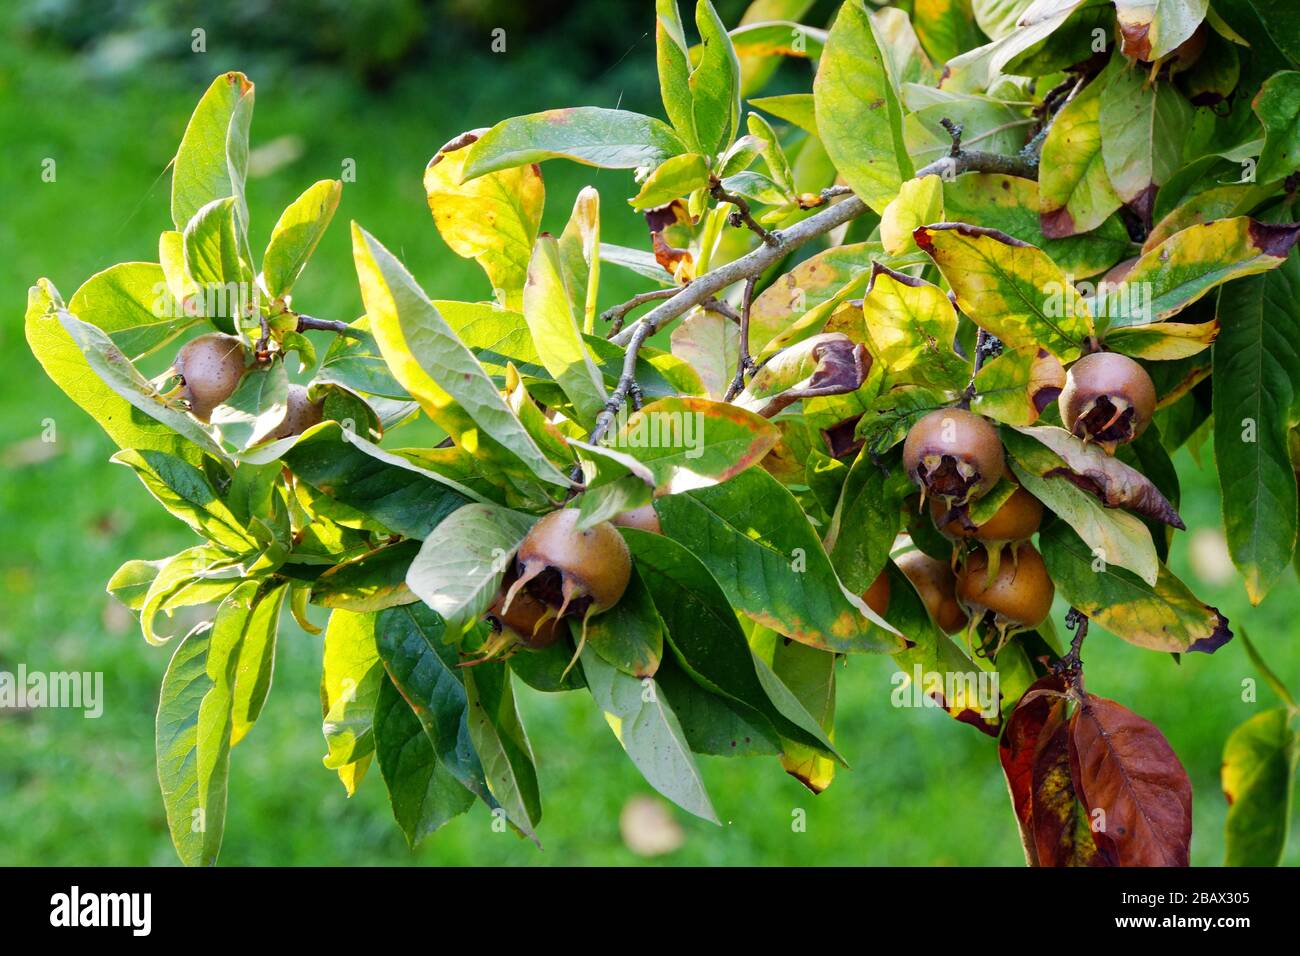 Früchte der Echte Mispel (Mespilus germanica), Rothenburg ob der Tauber, Bayern, Deutschland Stock Photo